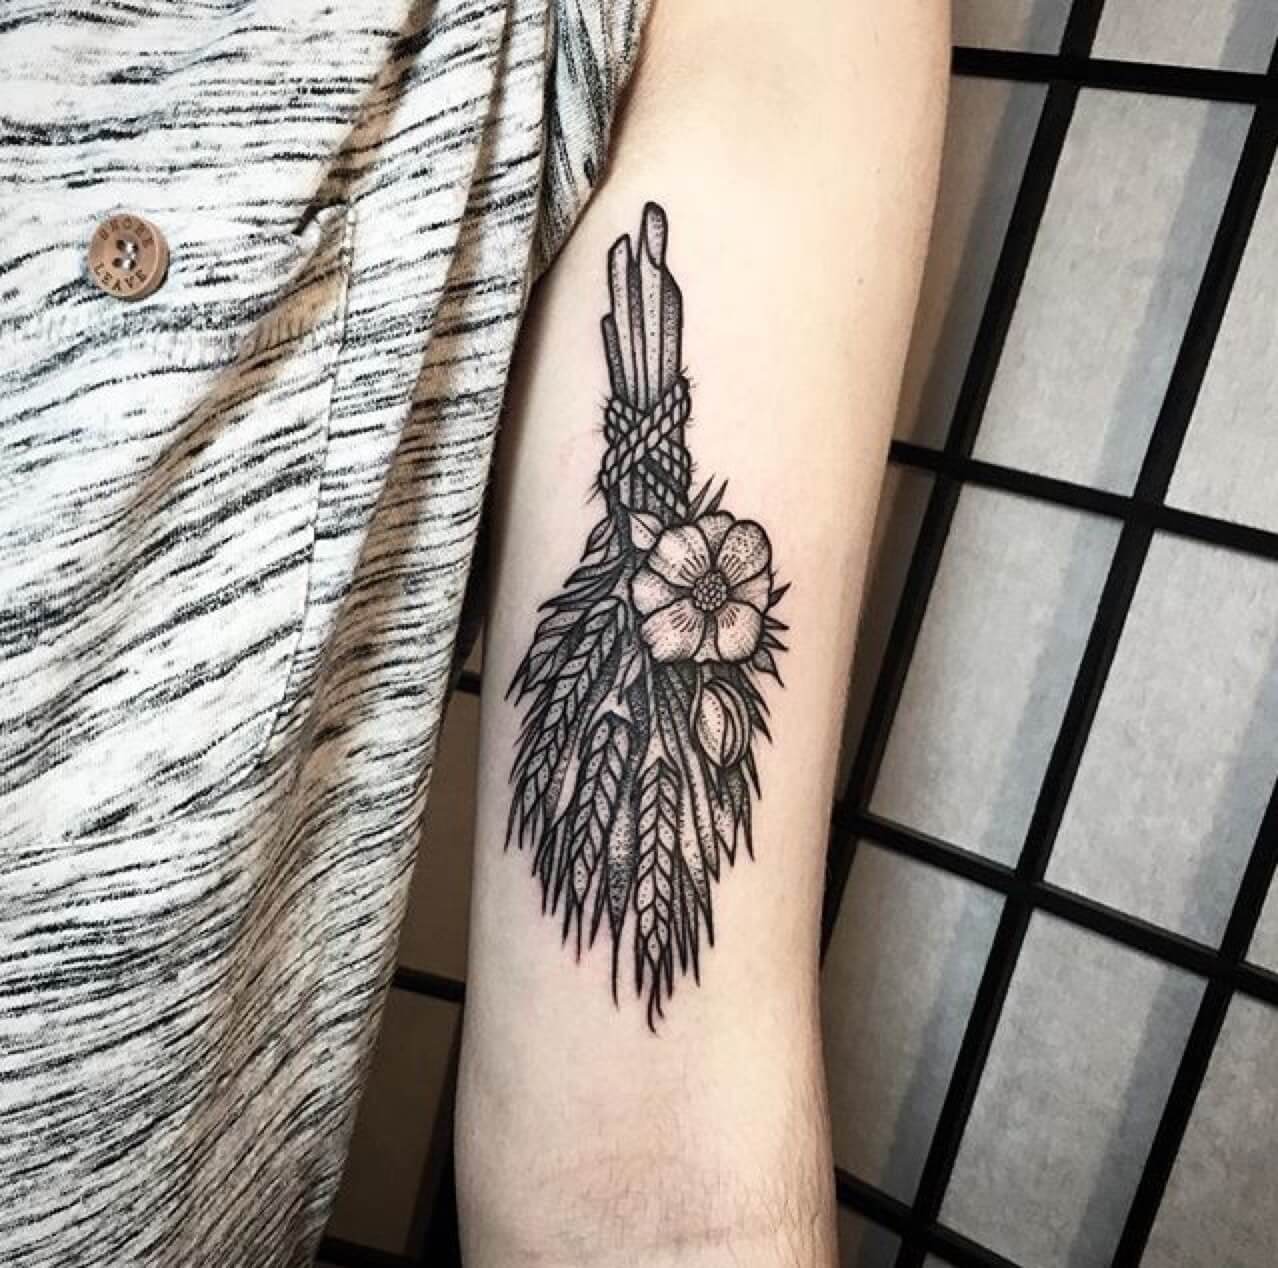 Wheat bundle tattoo by Johno Tattooer